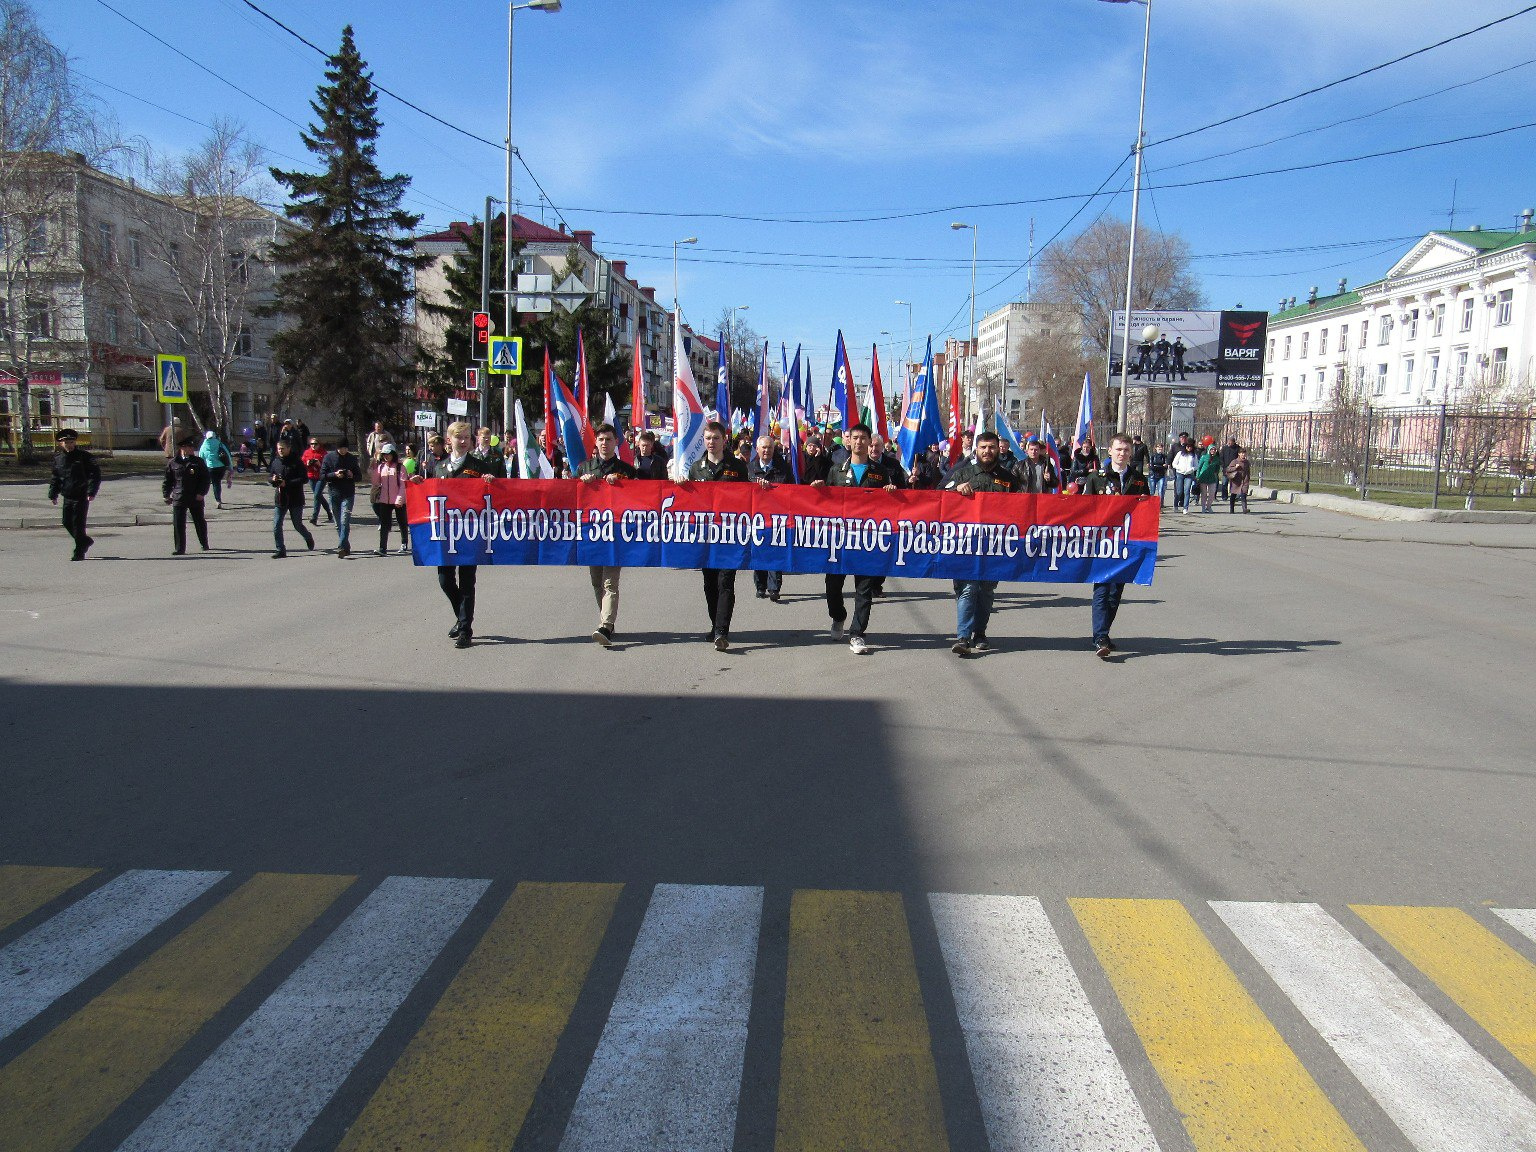 Мир! Труд! Достойная зарплата»: в Кургане прошла первомайская демонстрация  - 1 мая 2018 - 45.ru